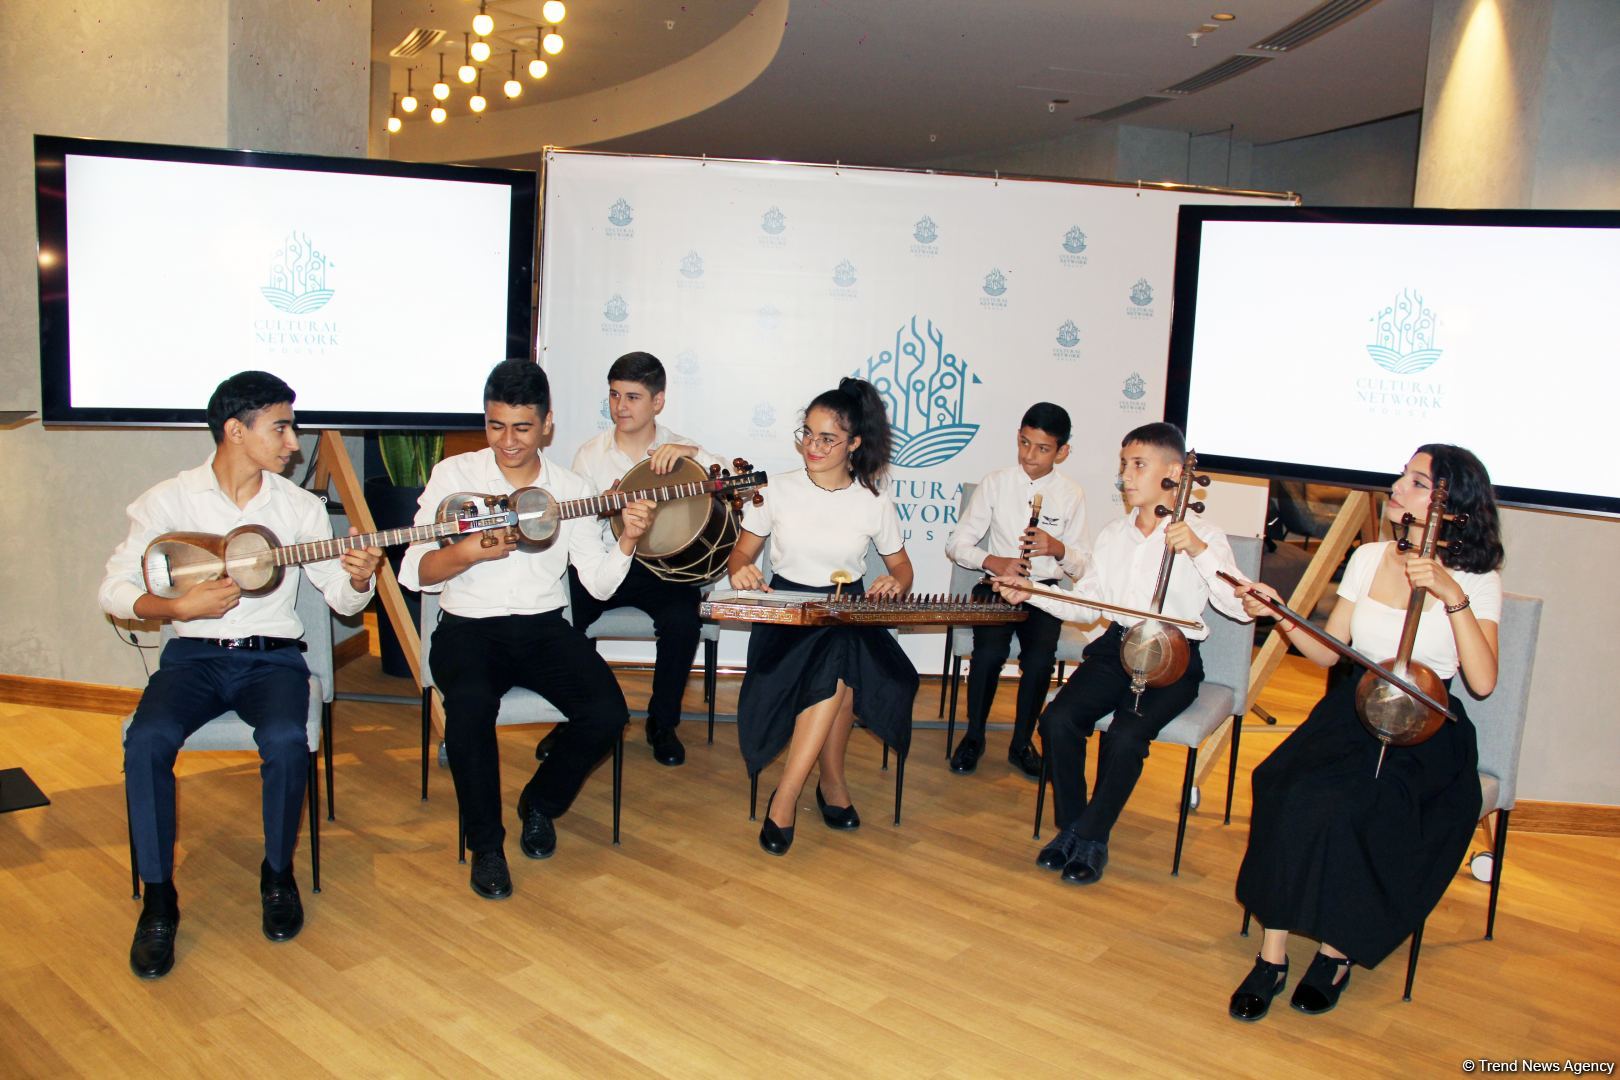 В Баку состоялась презентация Cultural Network House Association - новое дыхание в культурной жизни  (ВИДЕО, ФОТО)